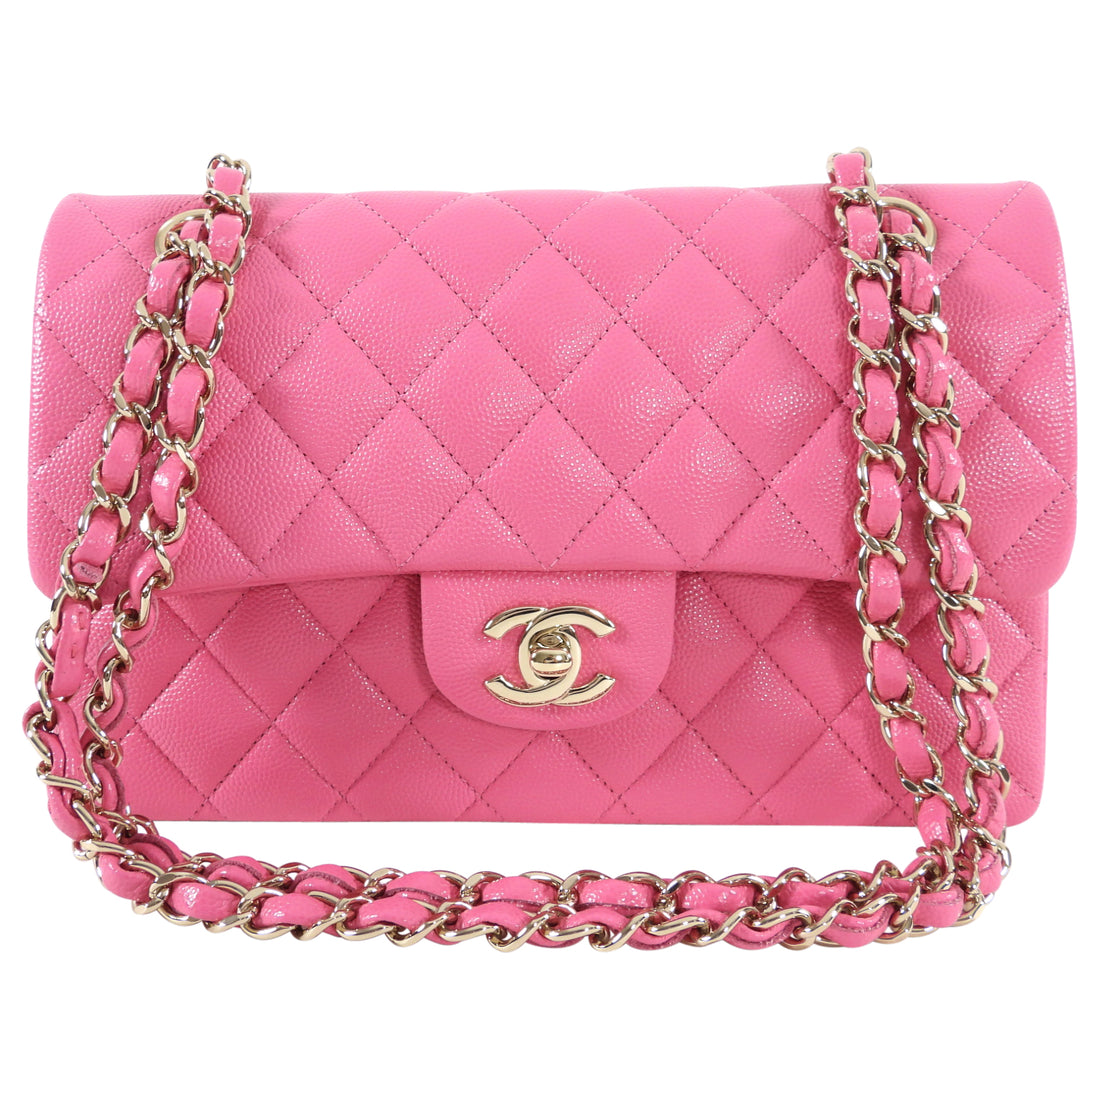 Chanel Classic Flap Bag Size Comparison  FifthAvenueGirlcom